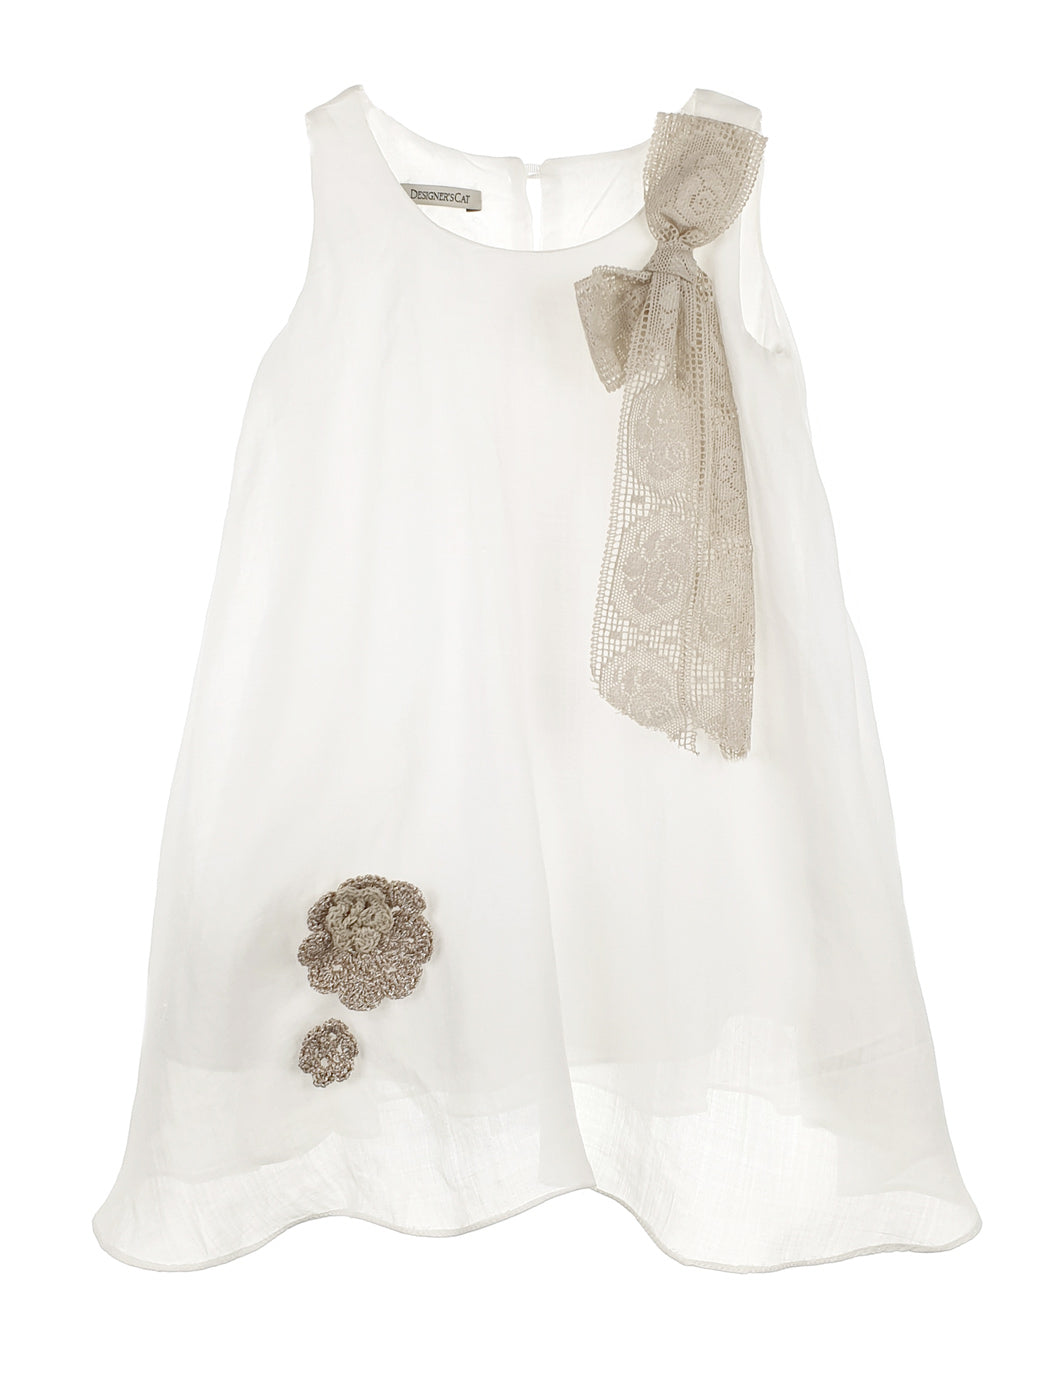 Βαπτιστικό Φόρεμα με κροσέ λουλούδια - SARRAH - 55% ΕΚΠΤΩΣΗ